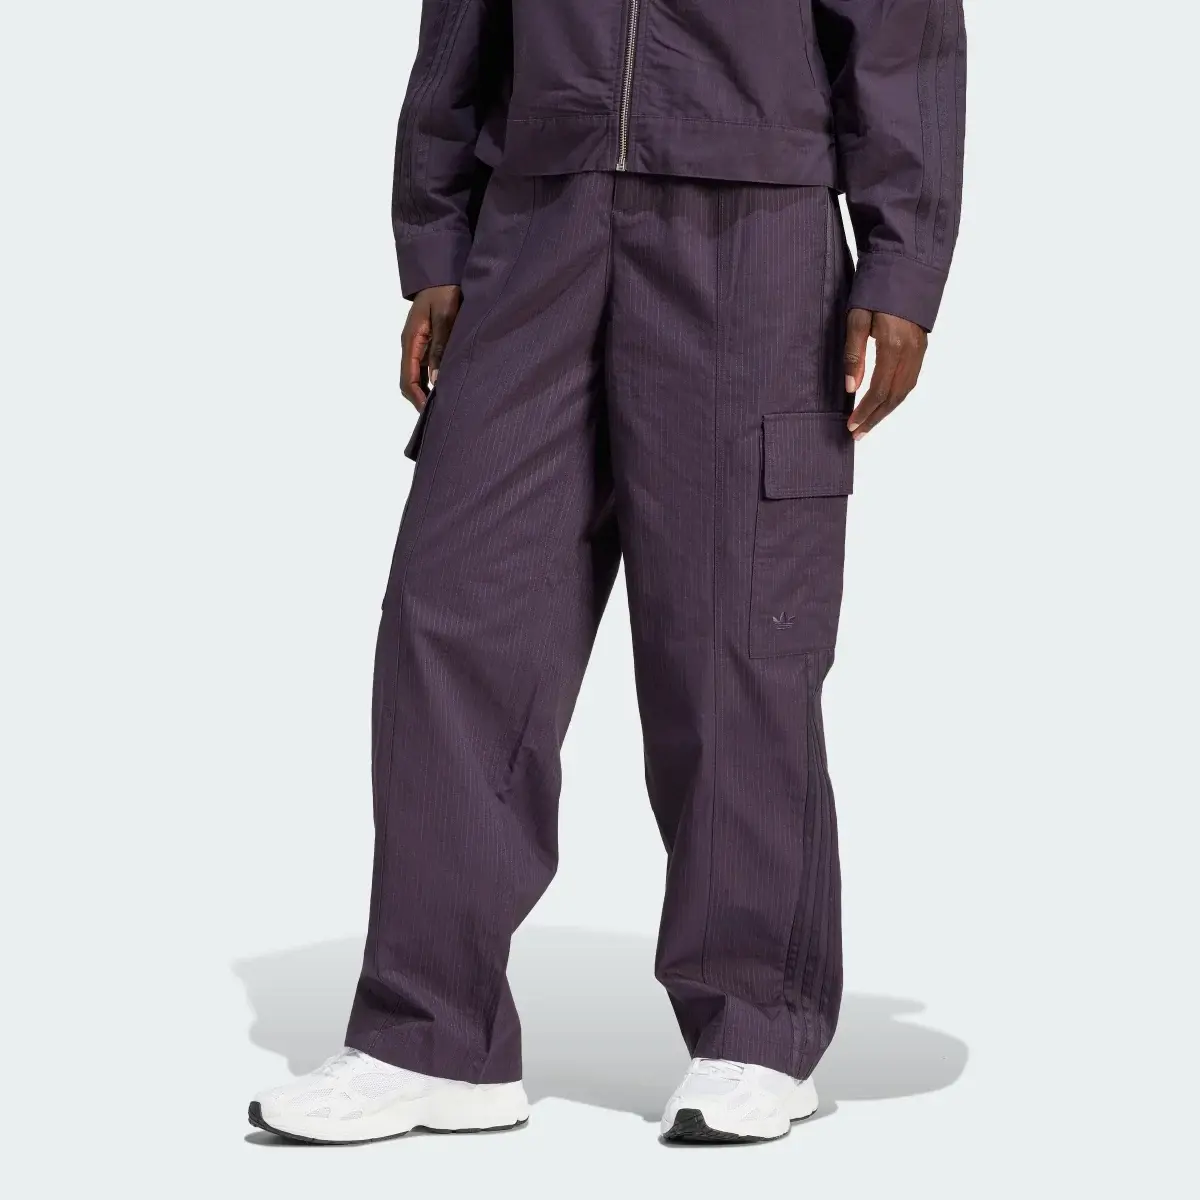 Adidas Premium Essentials Ripstop Trousers. 1